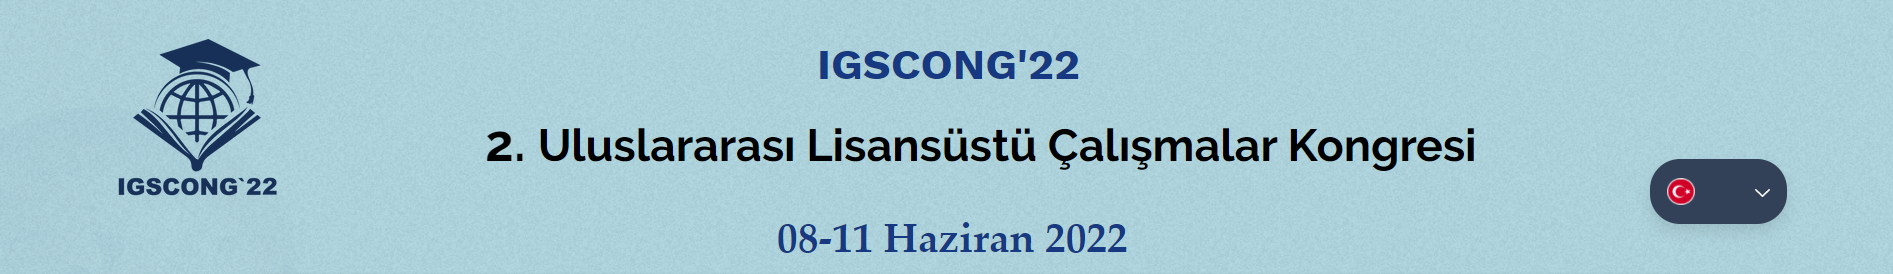 2. Uluslararası Lisansüstü Çalışmalar Kongresi – IGSCONG 2022